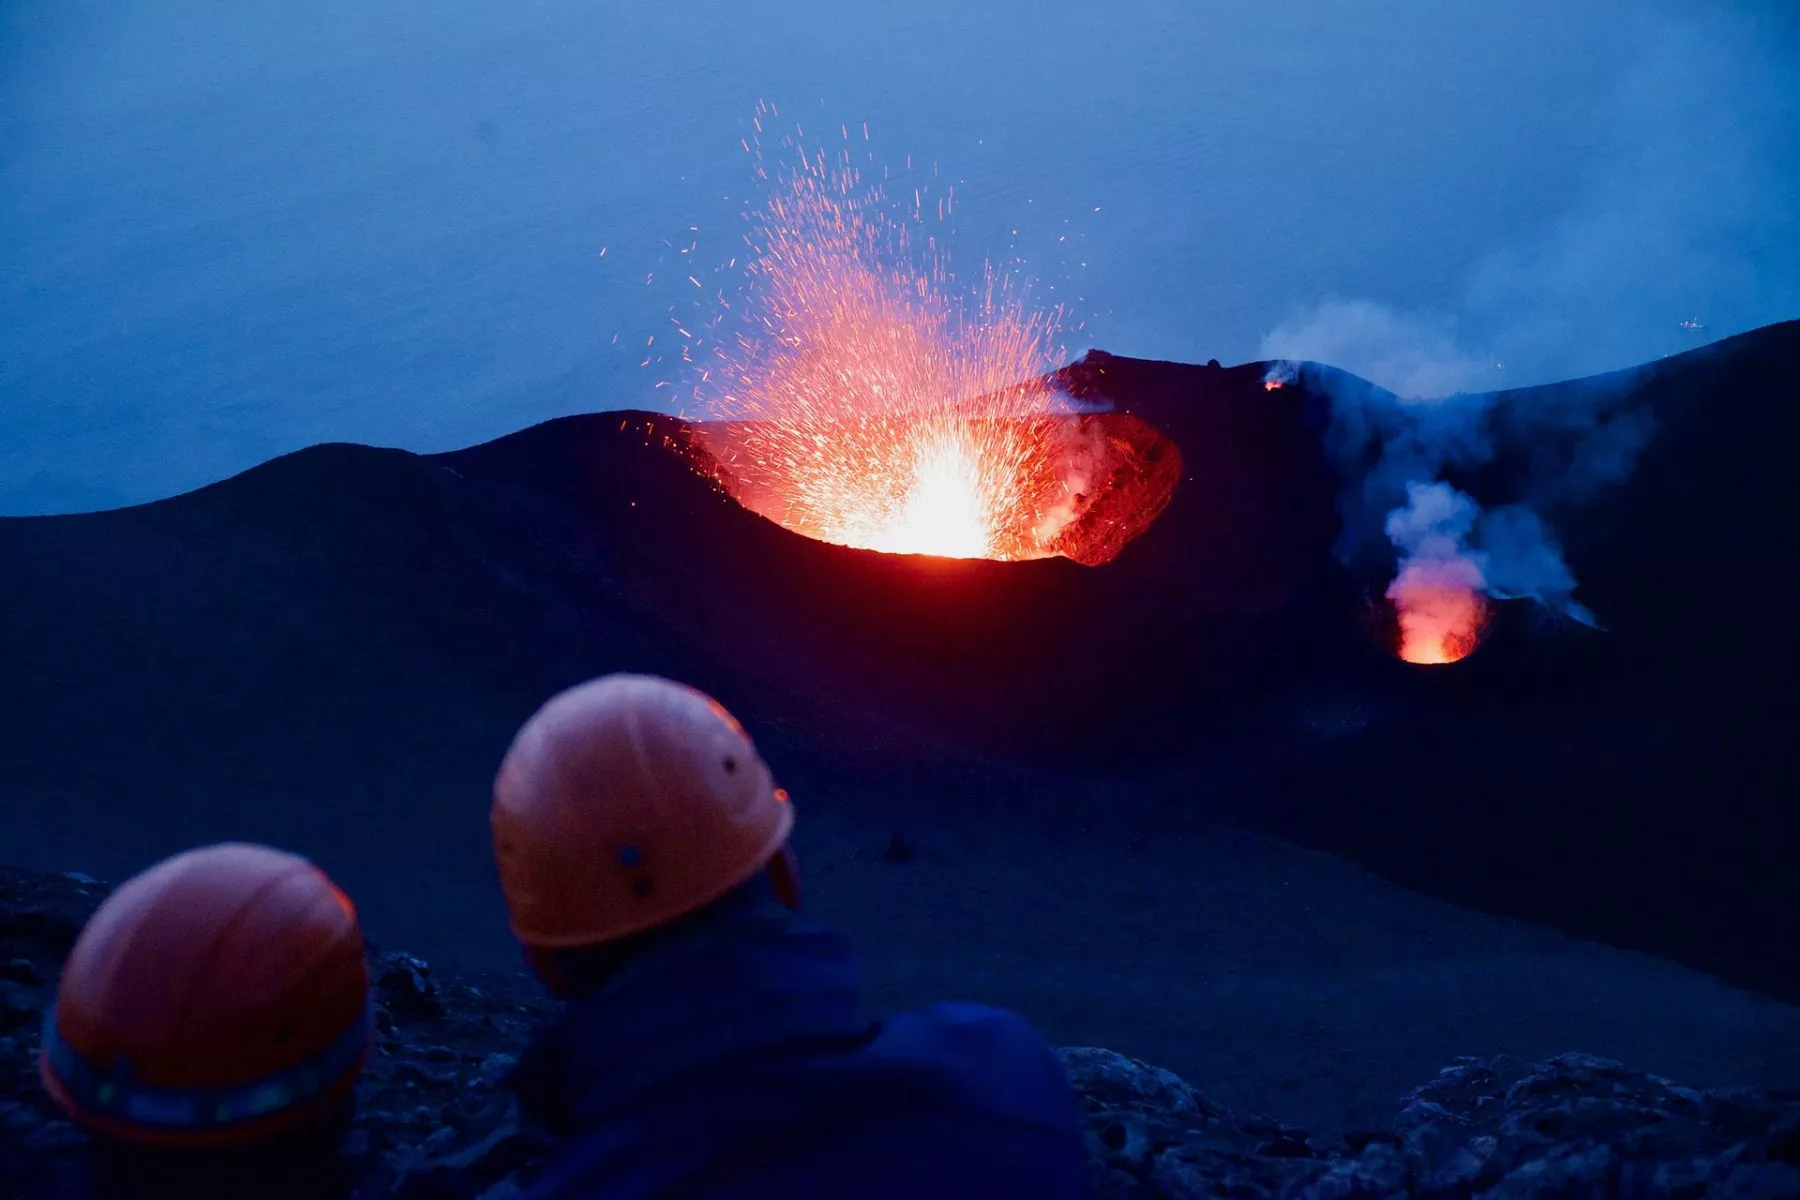 Bitcoin minen met vulkanen kost nog steeds meer dan olie